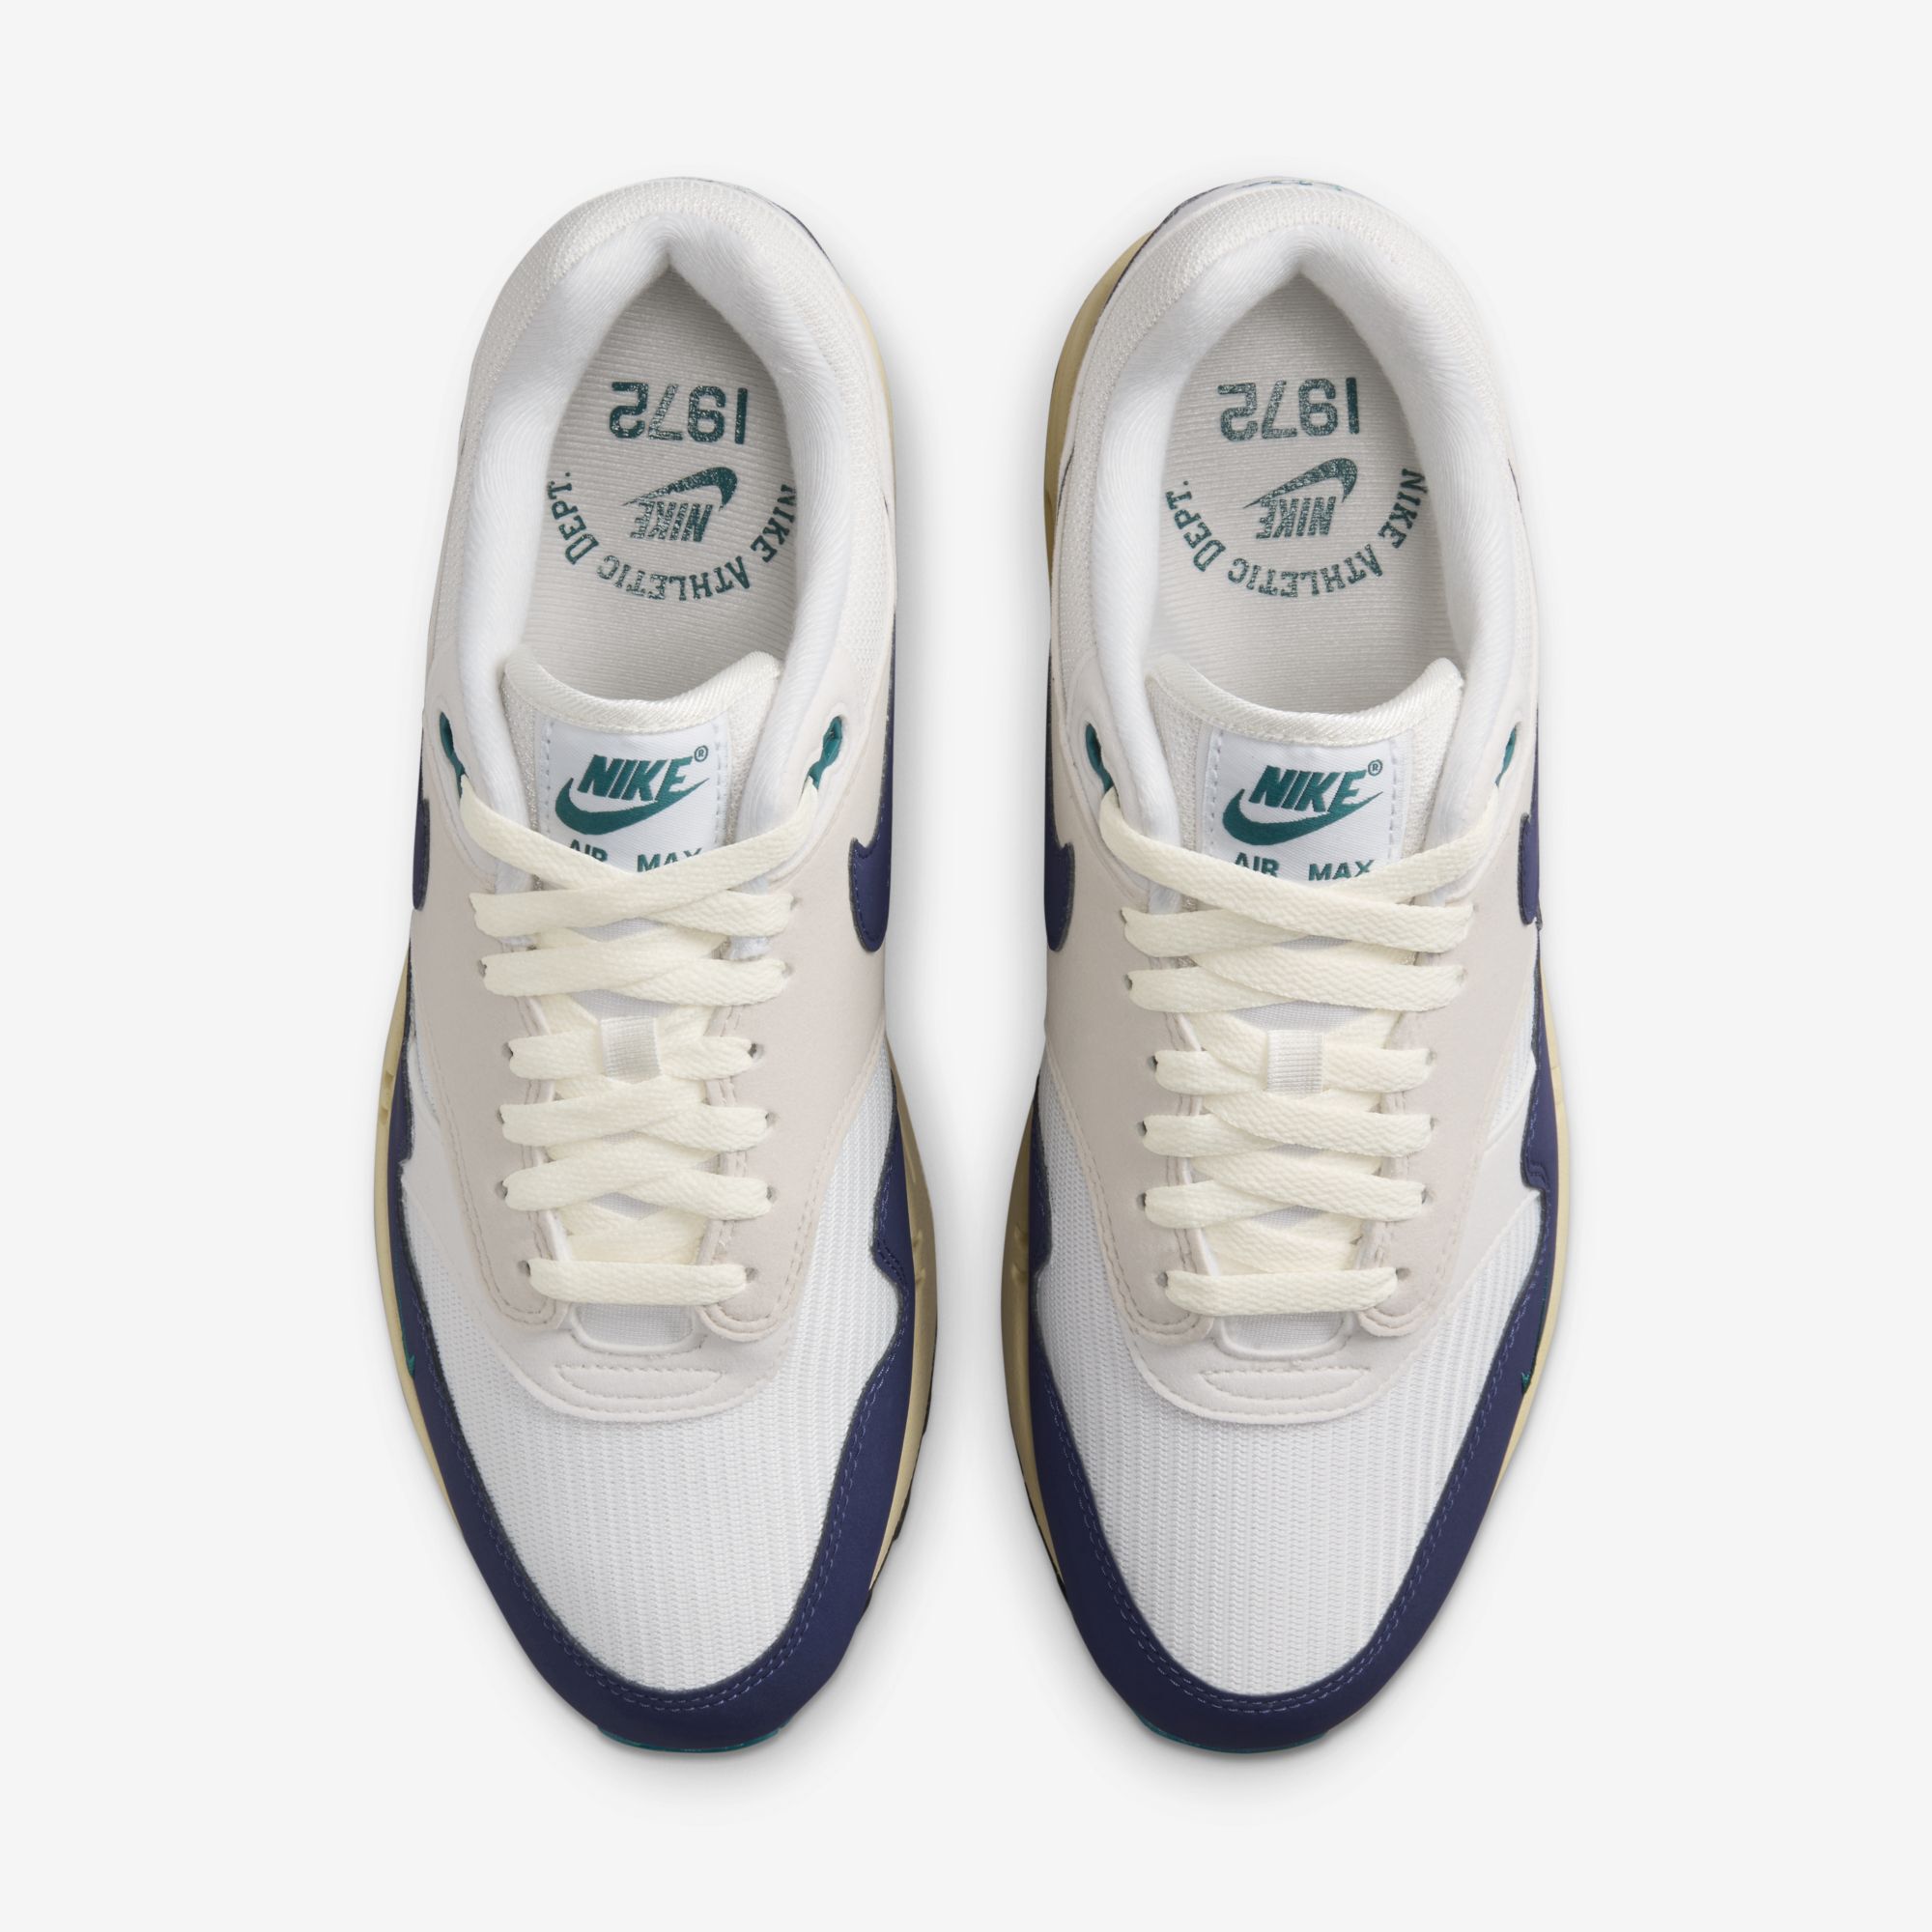 Nike Air Max 1, Vela/Marrón verdoso claro/Fantasma/Azul royal intenso, hi-res